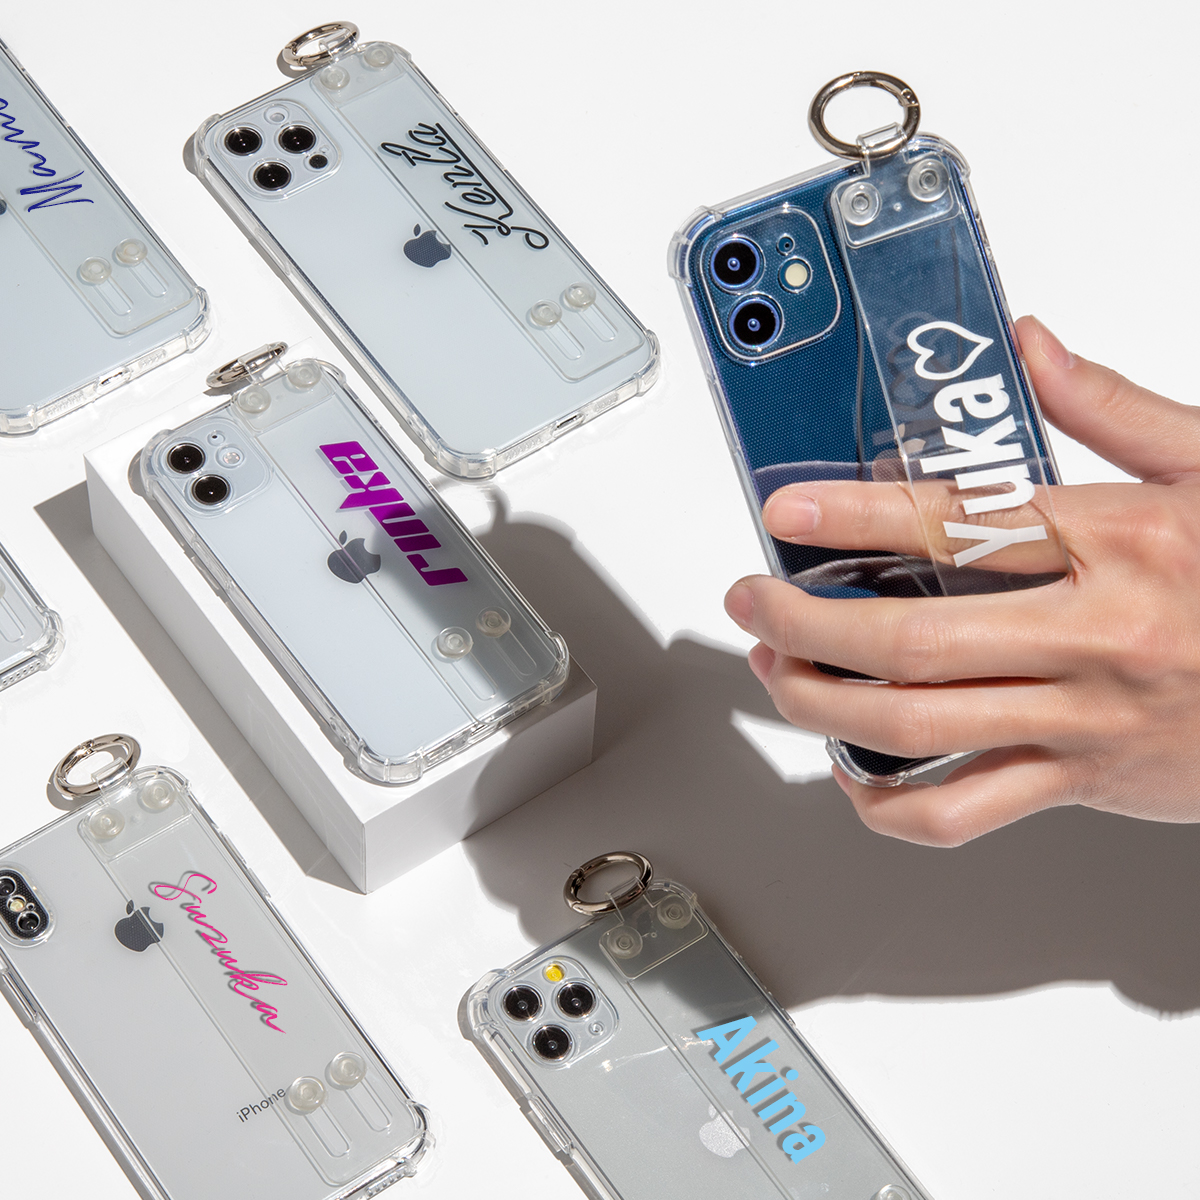 楽天市場 Iphone 12 ケース 韓国 Iphone12pro Iphone12mini Iohone12promax Iphone11 カバー スマホケース Casepholic かわいい おしゃれ 人気 耐衝撃 名入れ 名入れ対応 ベルト付き耐衝撃ケース 名入れスマホケースエックスモール